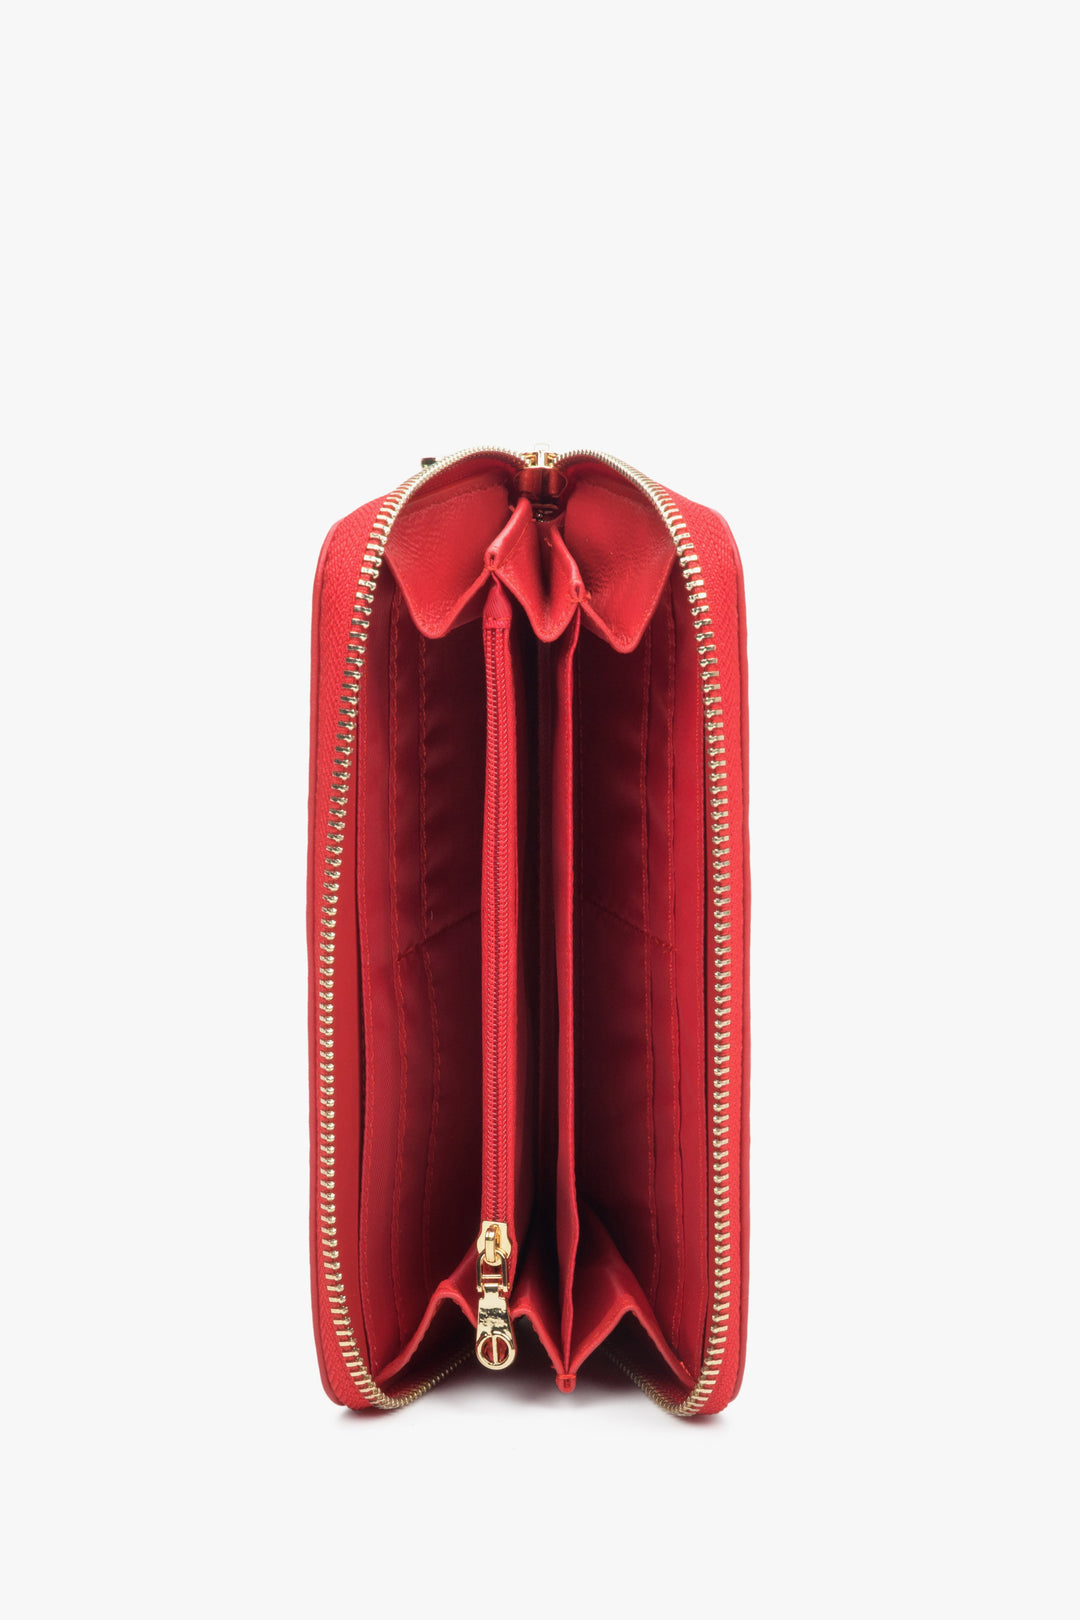 Damski duży portfel w kolorze czzerwonym marki Estro z suwakiem - wnętrze.